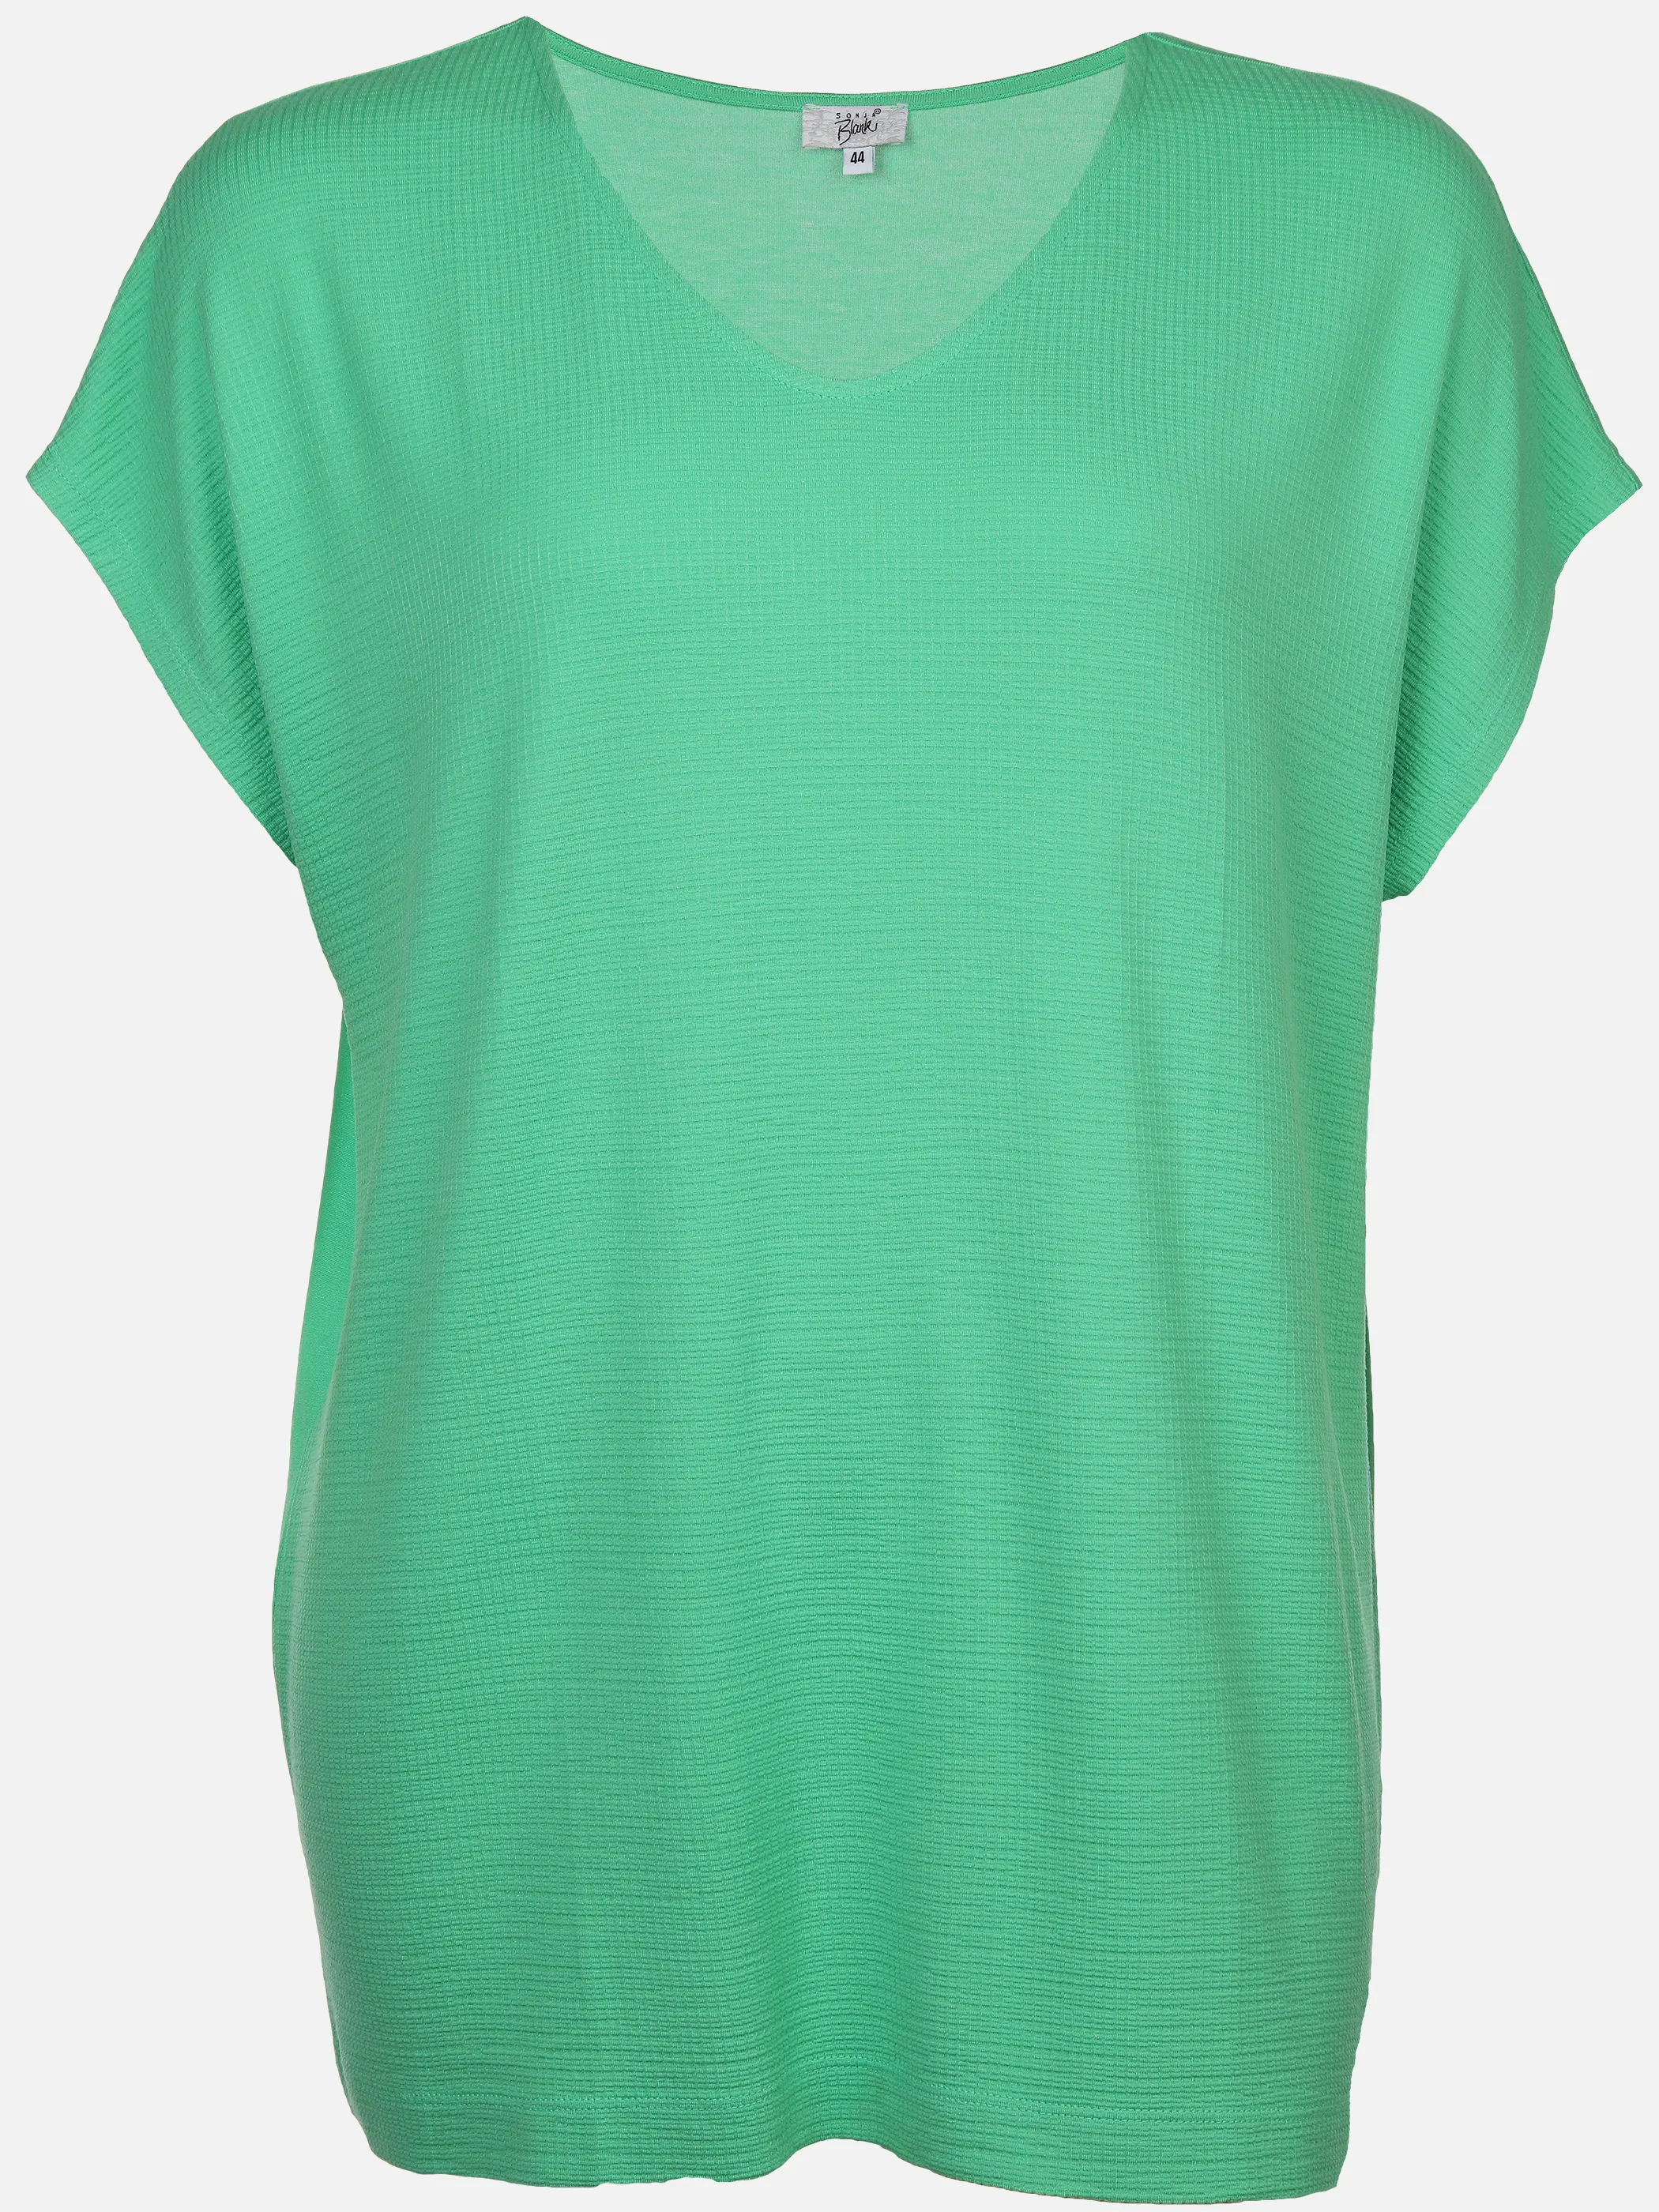 Sonja Blank Da-gr.Gr. T-Shirt V-Ausschnitt Grün 890335 IRISHGREEN 1